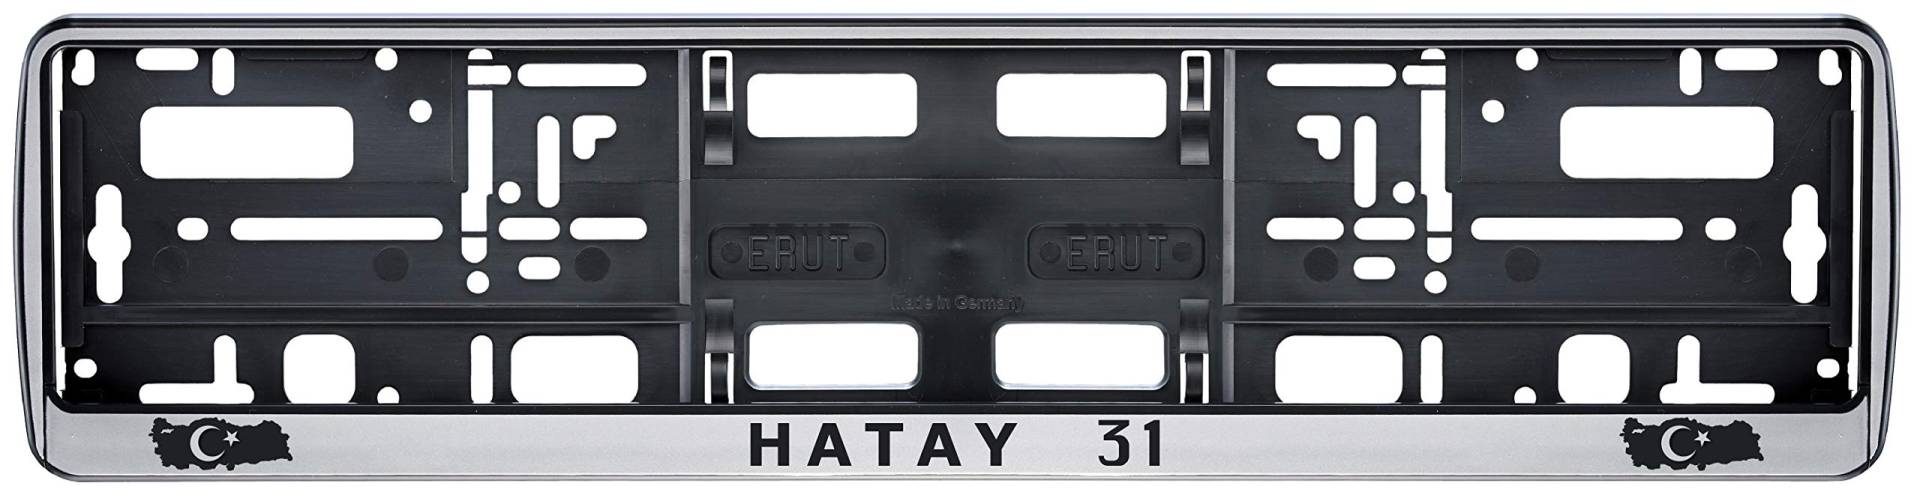 Auto Kennzeichenhalter in der Farbe Silber/Schwarz Nummernschildhalterung Auto, Nummernschildhalter Türkei Flagge 31 Hatay 2 Stück von Aina